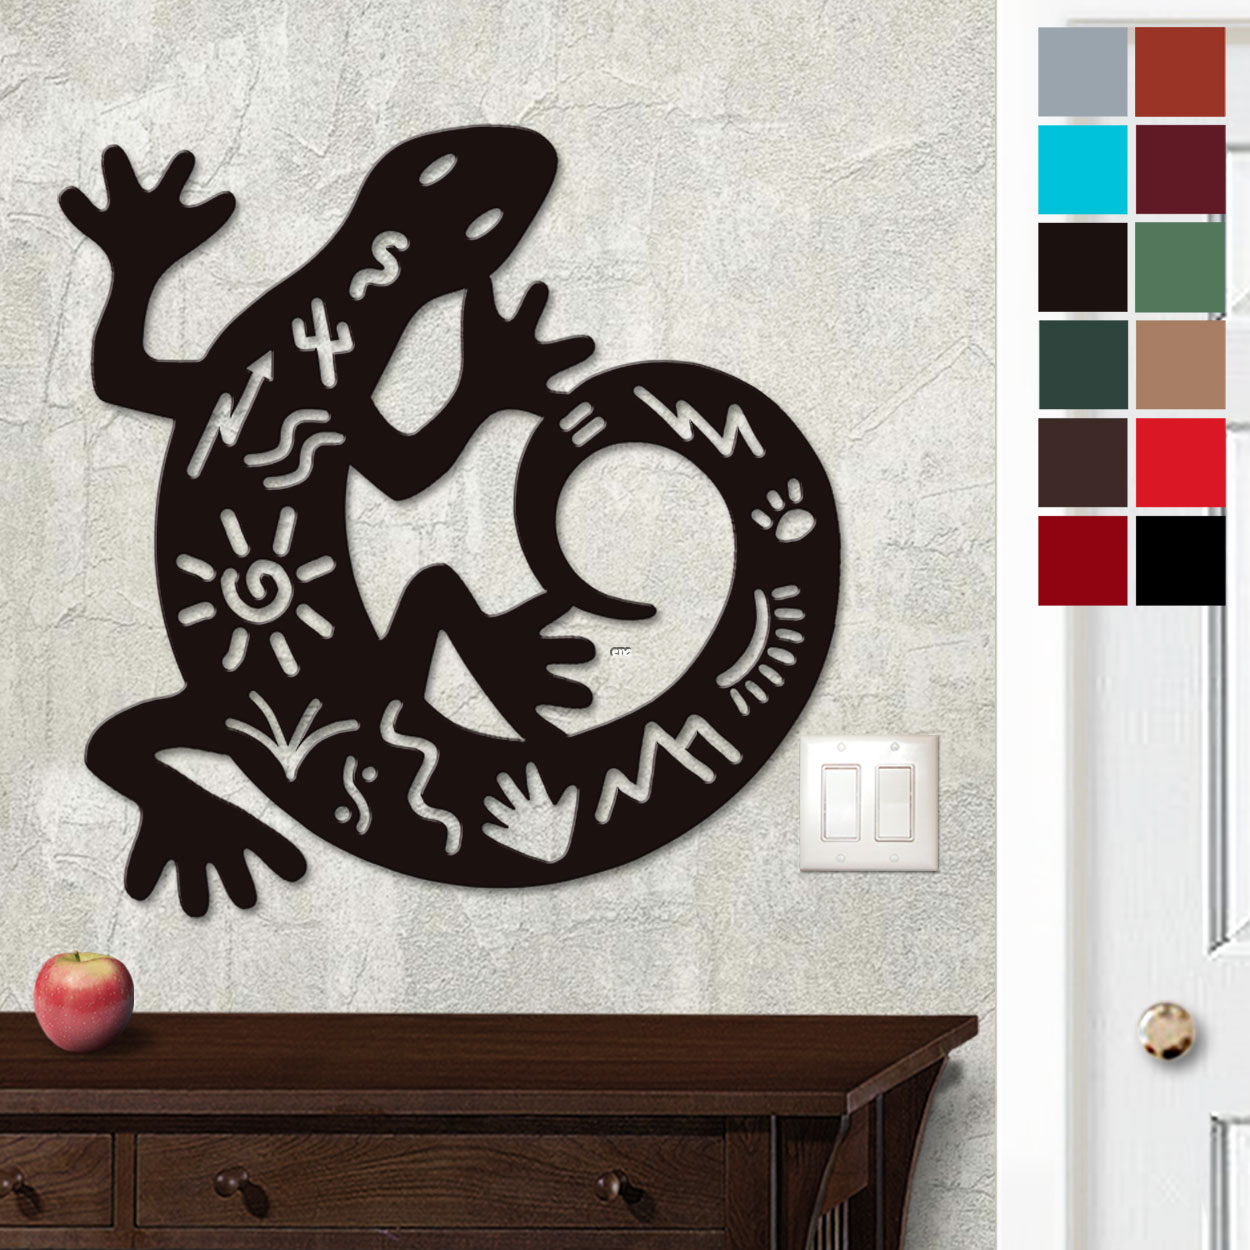 625013 - 18in or 24in Floating Metal Wall Art - Gecko Tales - Choose Color